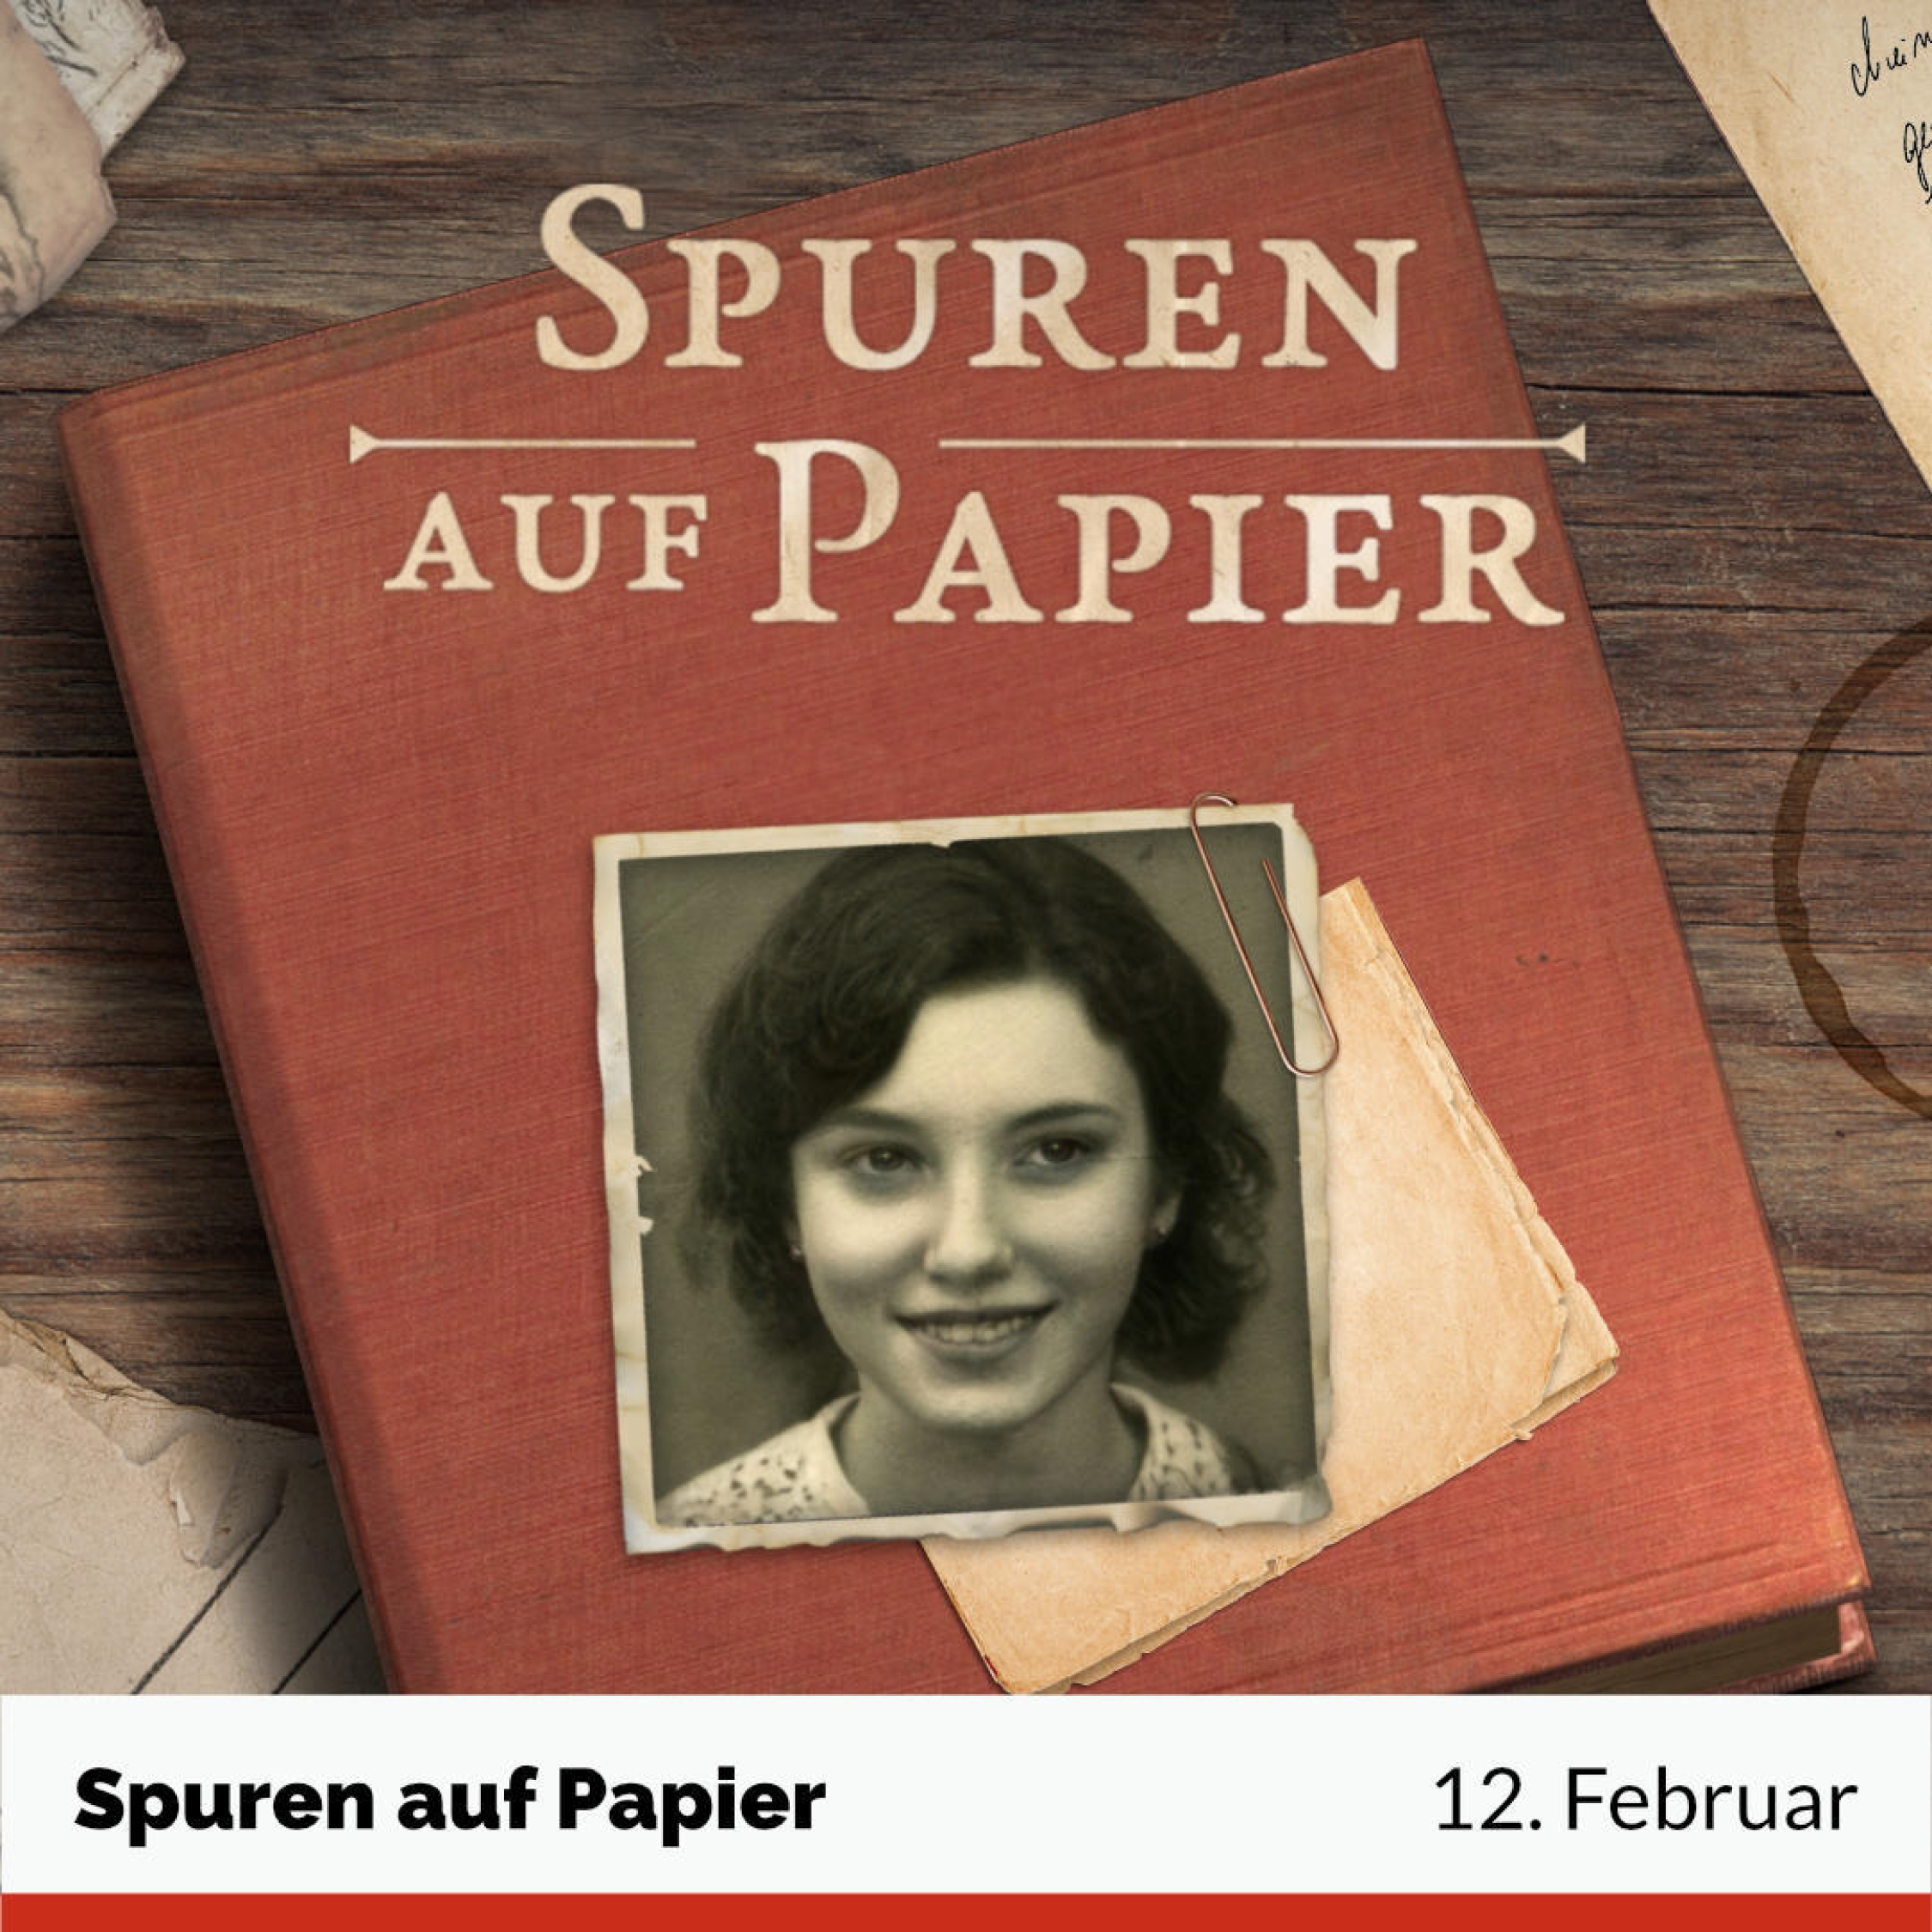 Spuren auf Papier - Veröffentlich am 12. Februar. Bild vom Startscreen mit Titel, Schreibtisch, Buch und einem Photo von einem Mädchen.